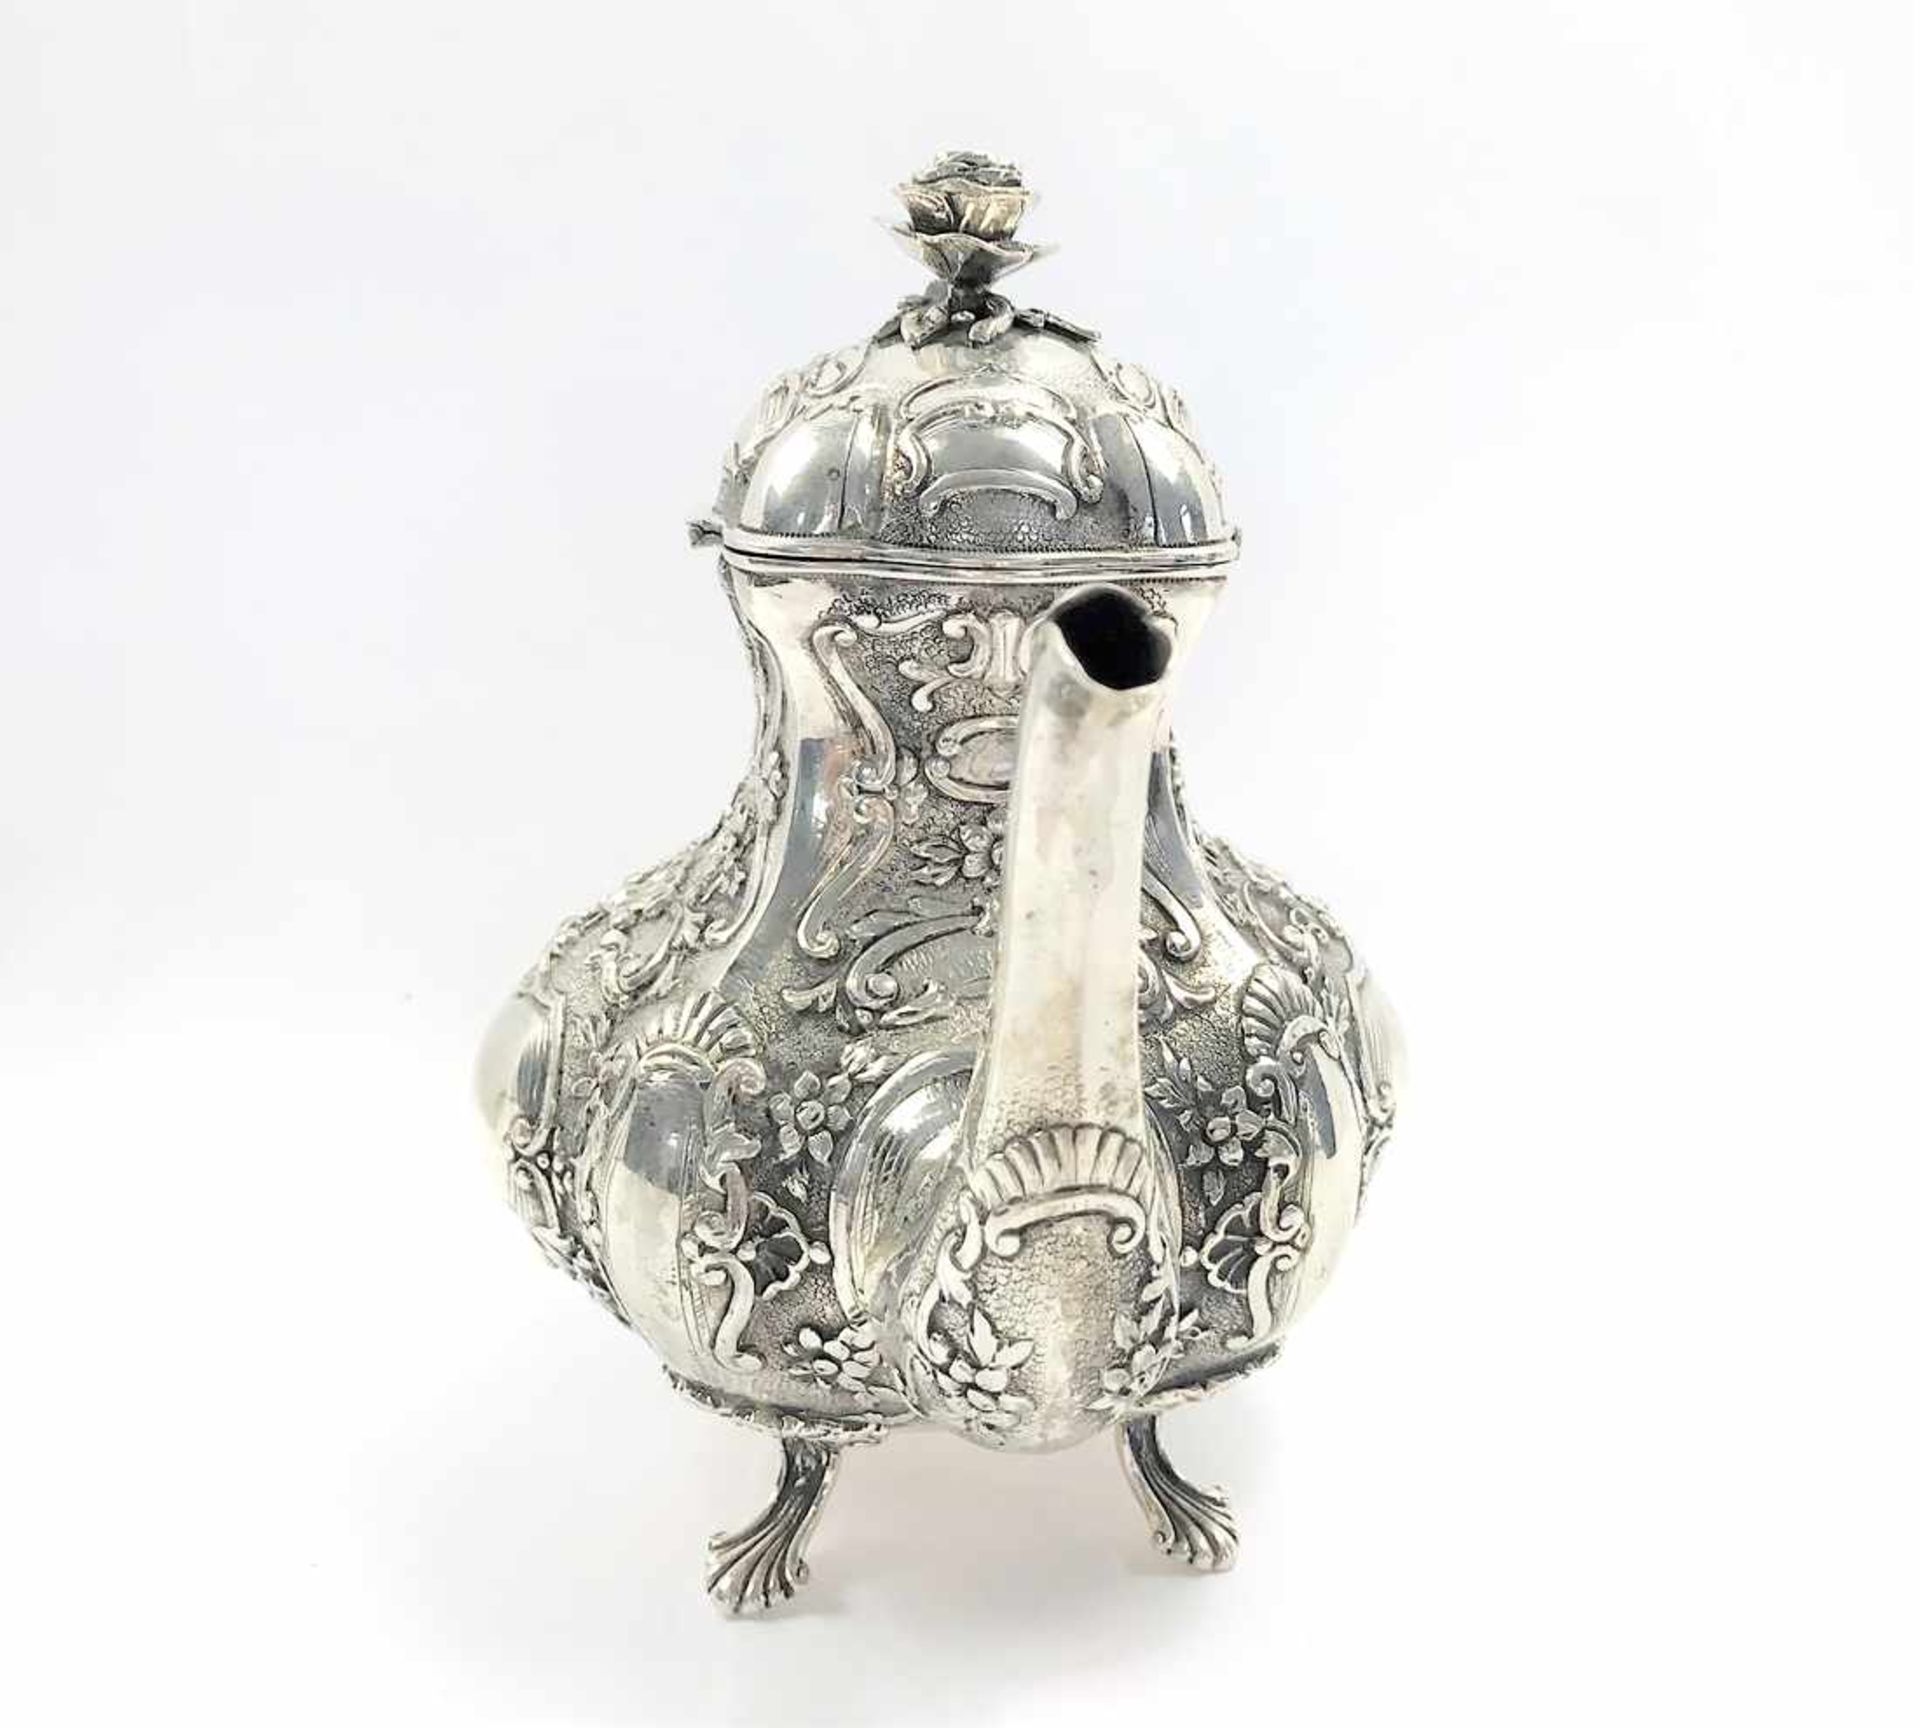 Kaffee- oder Teekanne mit reichem, reliefierten floralen Dekor in 830er Silber, leere - Bild 4 aus 16